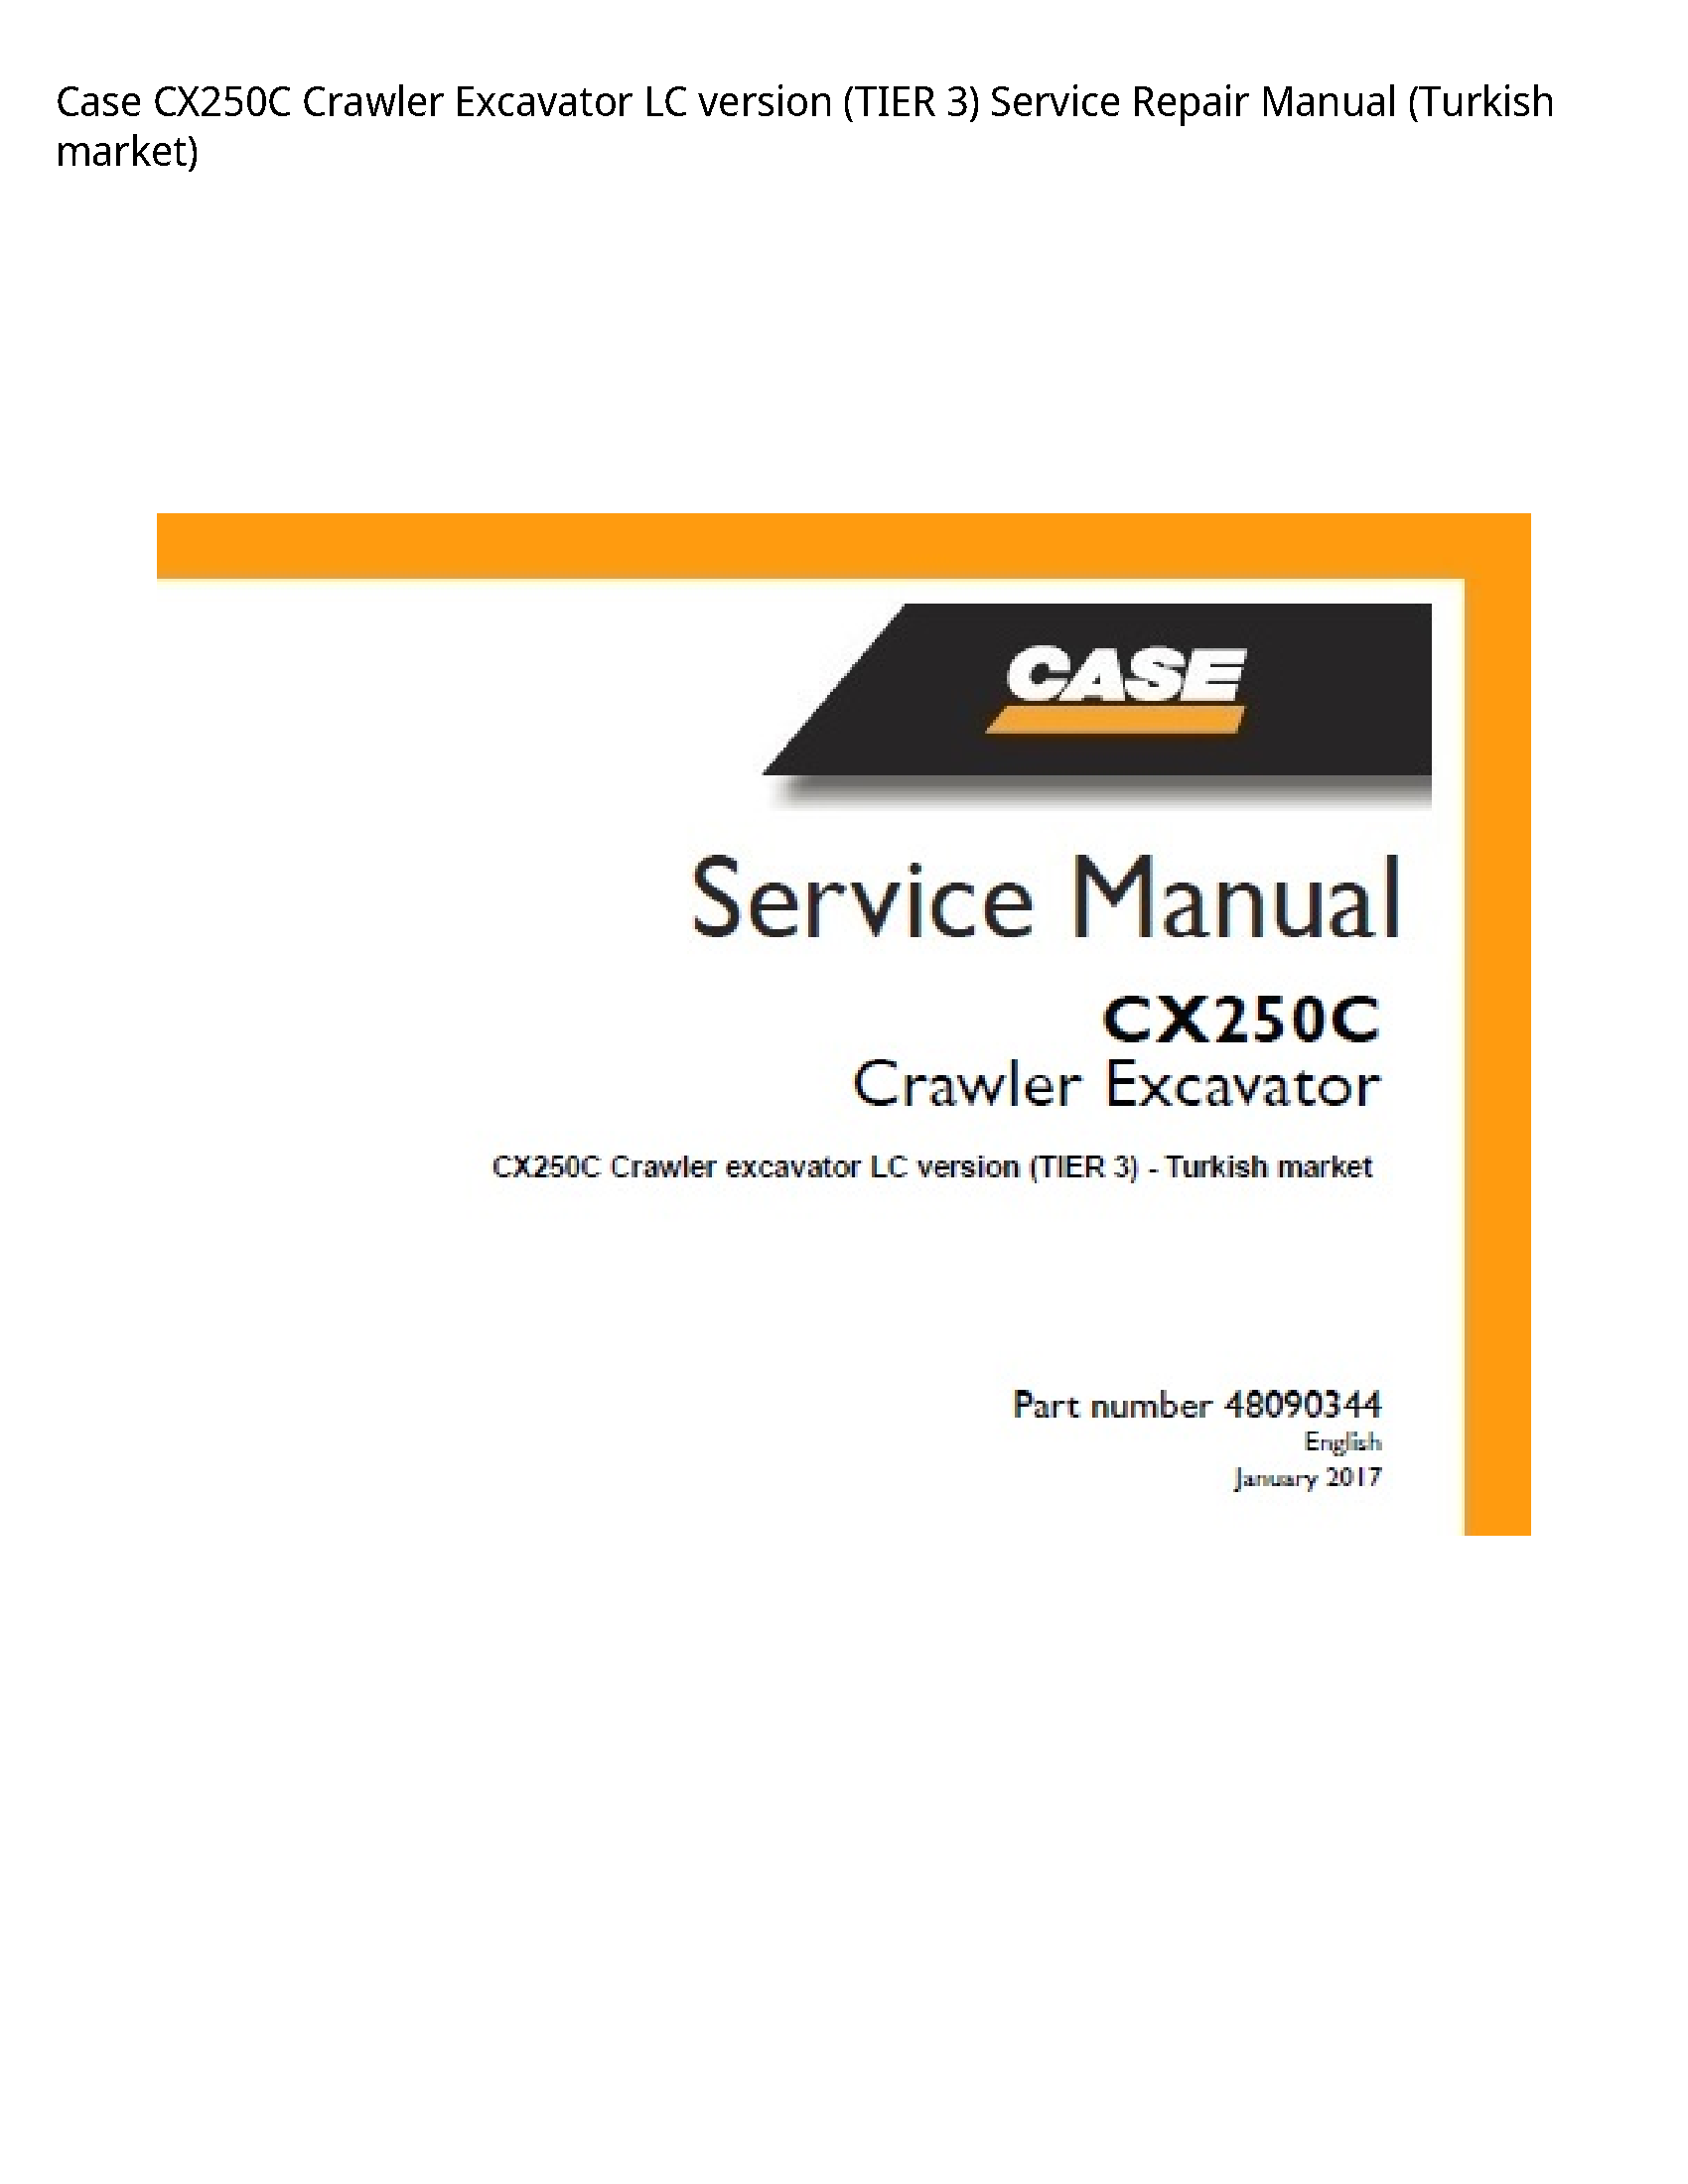 Case/Case IH CX250C Crawler Excavator LC version (TIER manual